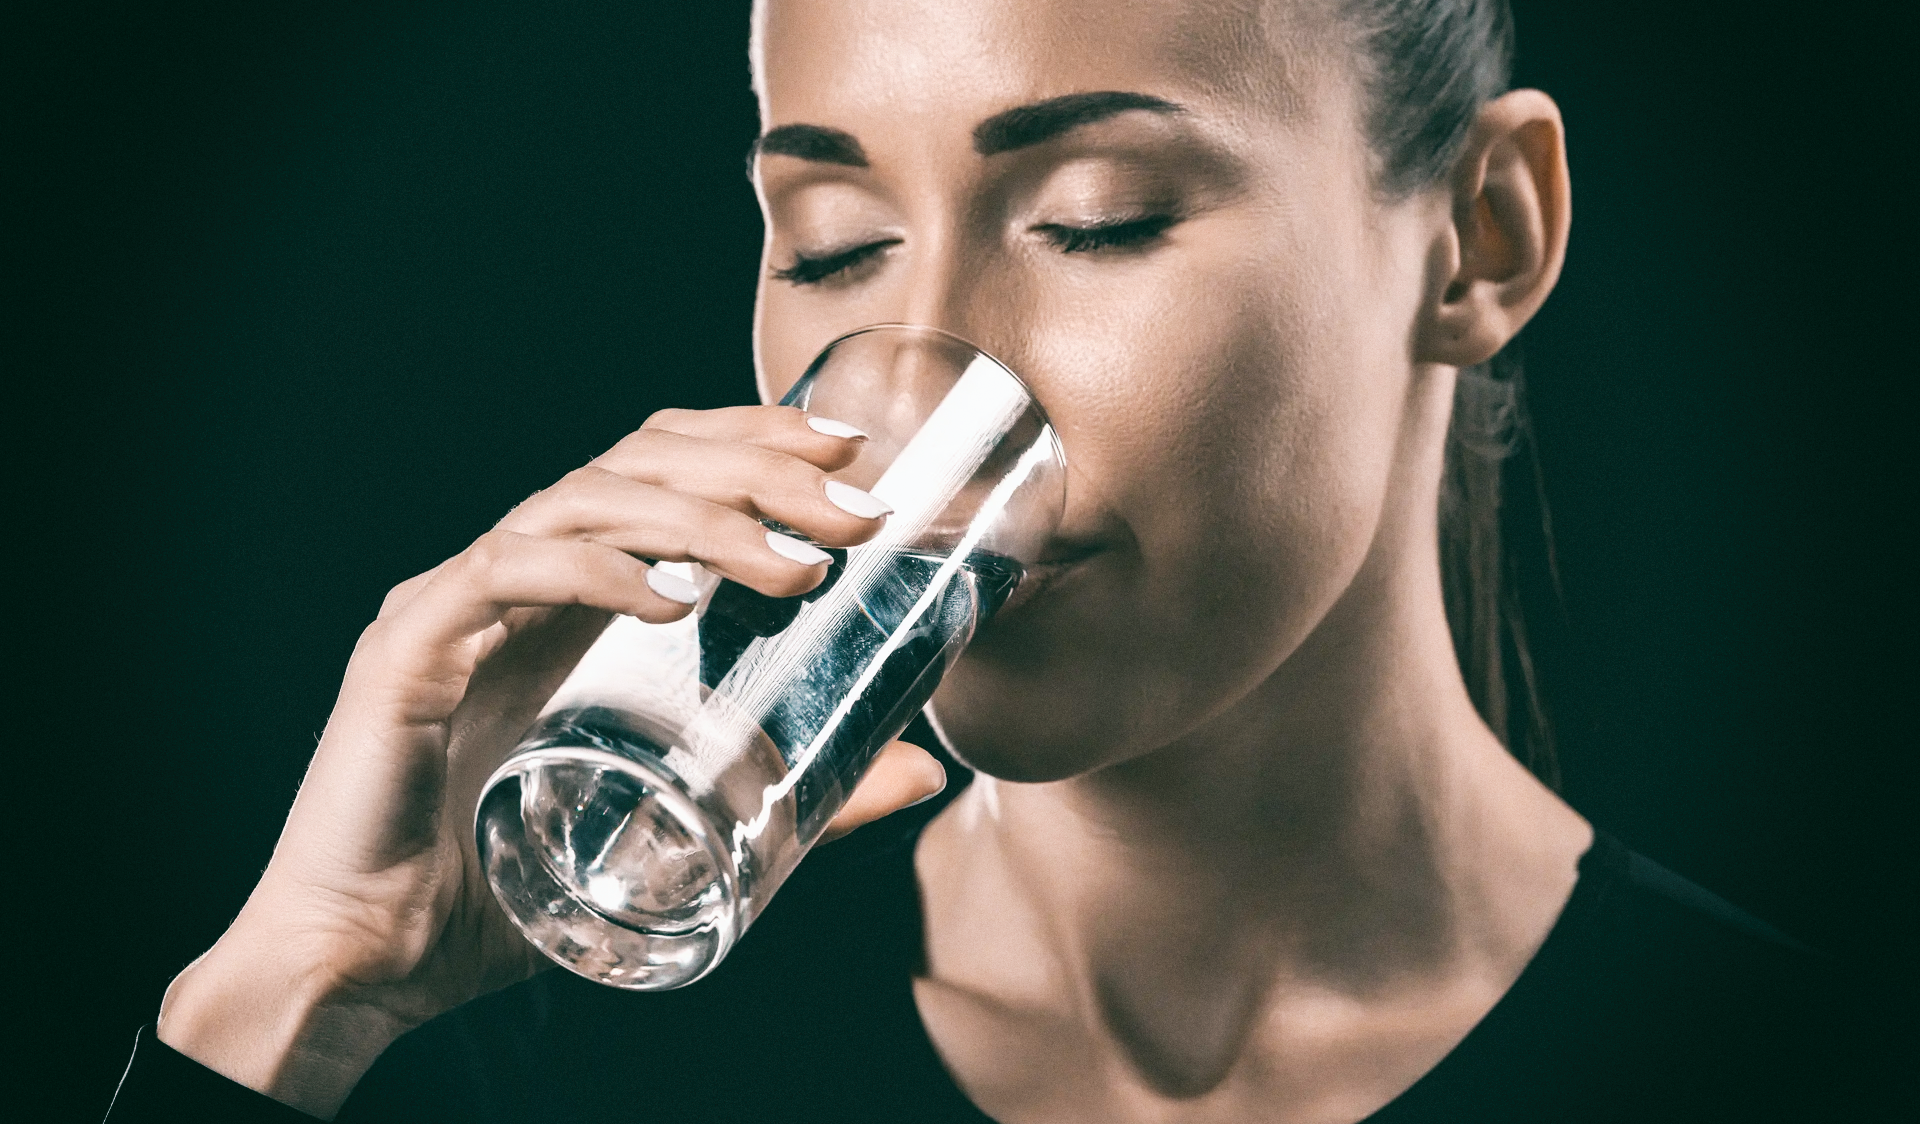 Пейте воду - живите дольше. Найдена связь между обезвоживанием и старением